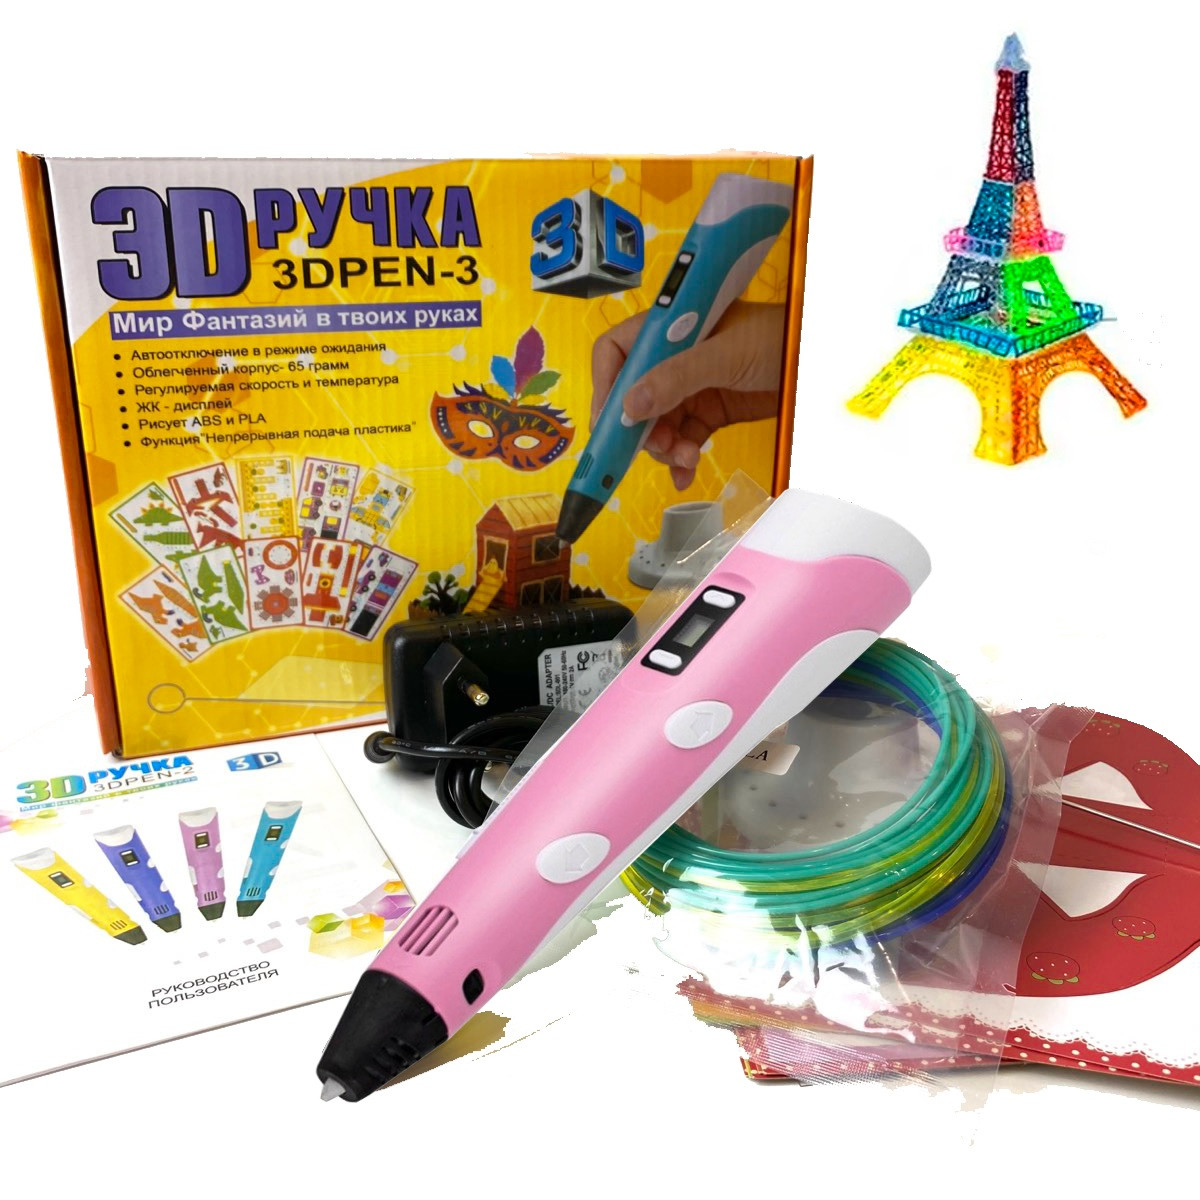 3D-ручка з LCD-дисплеєм для моделювання та дитячої творчості. 3D Pen-3